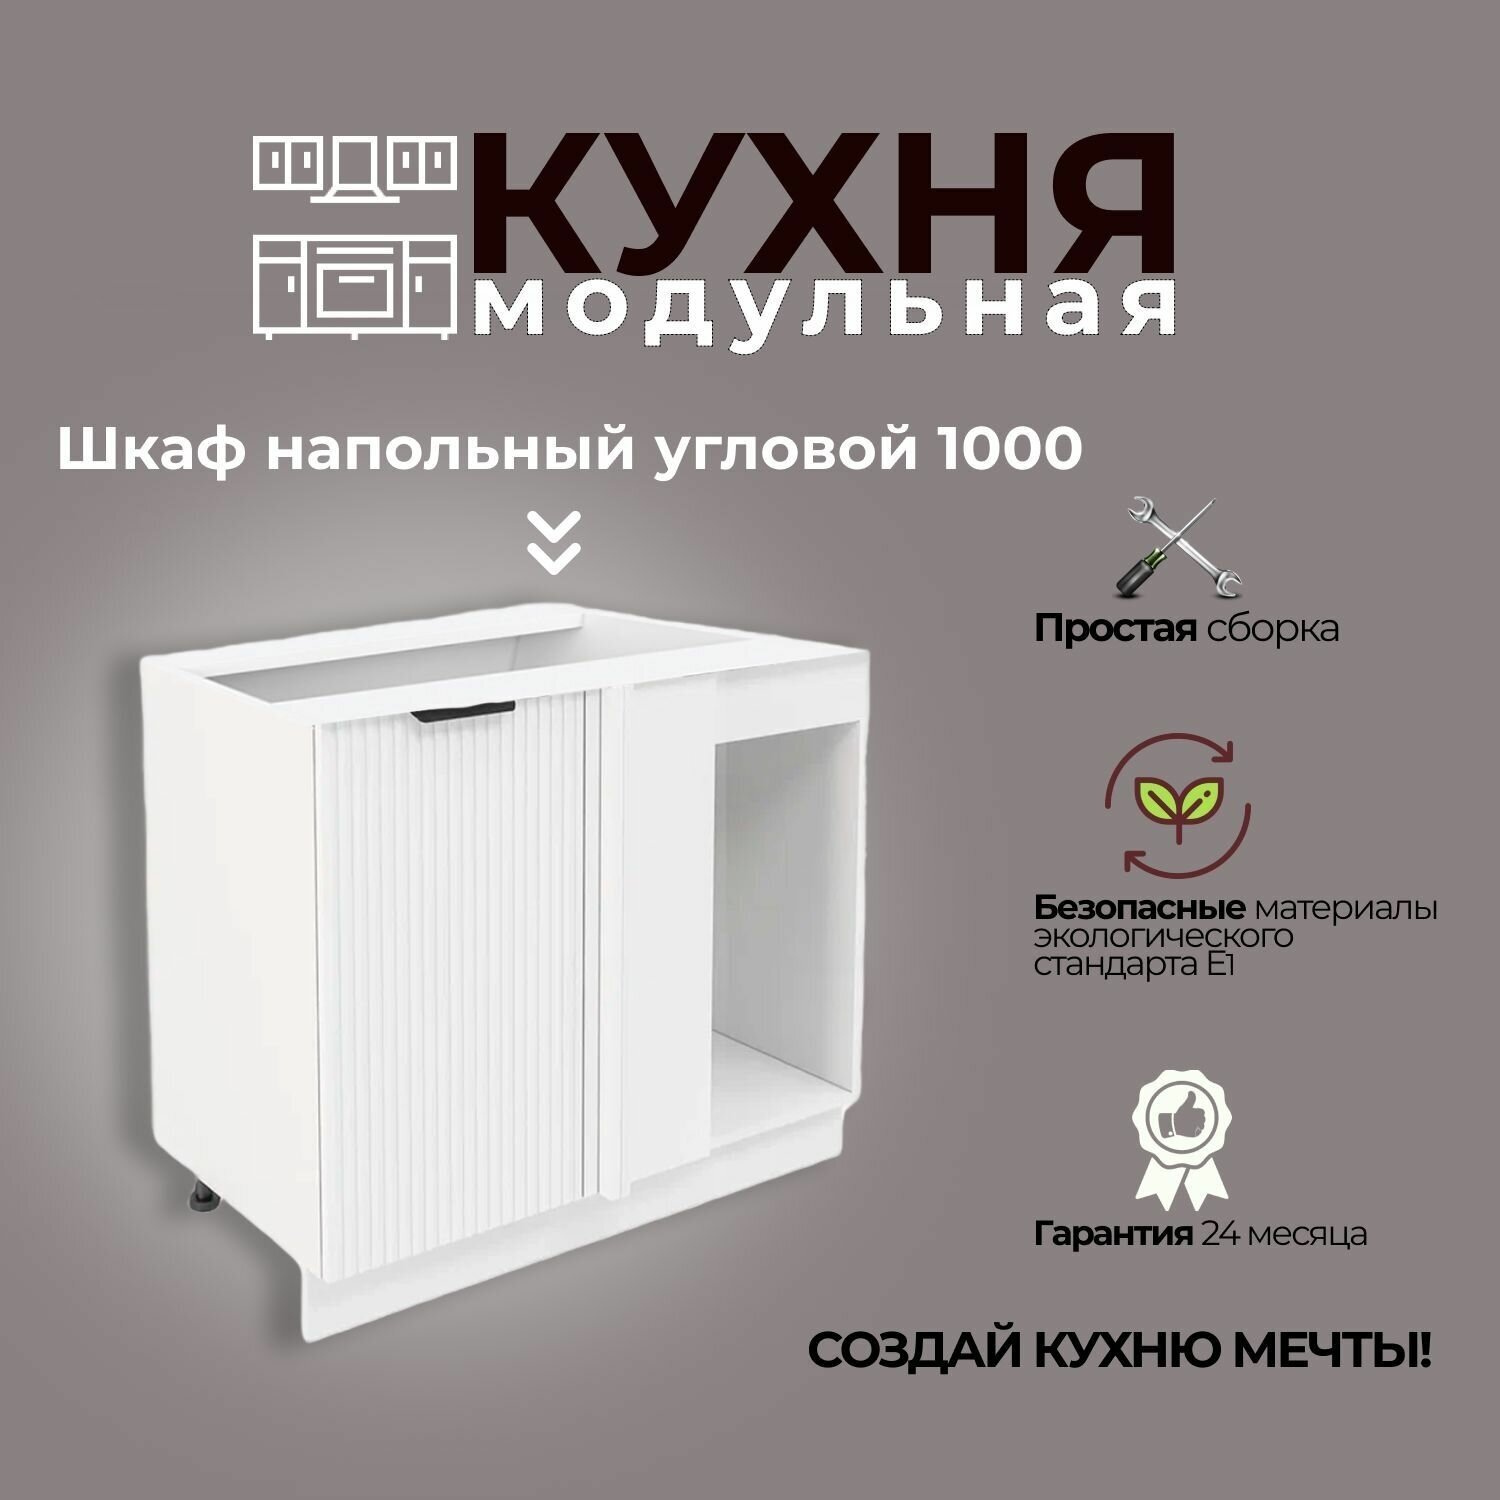 Модульная кухня шнуп 1000 / шкаф напольный угловой 1000 мм